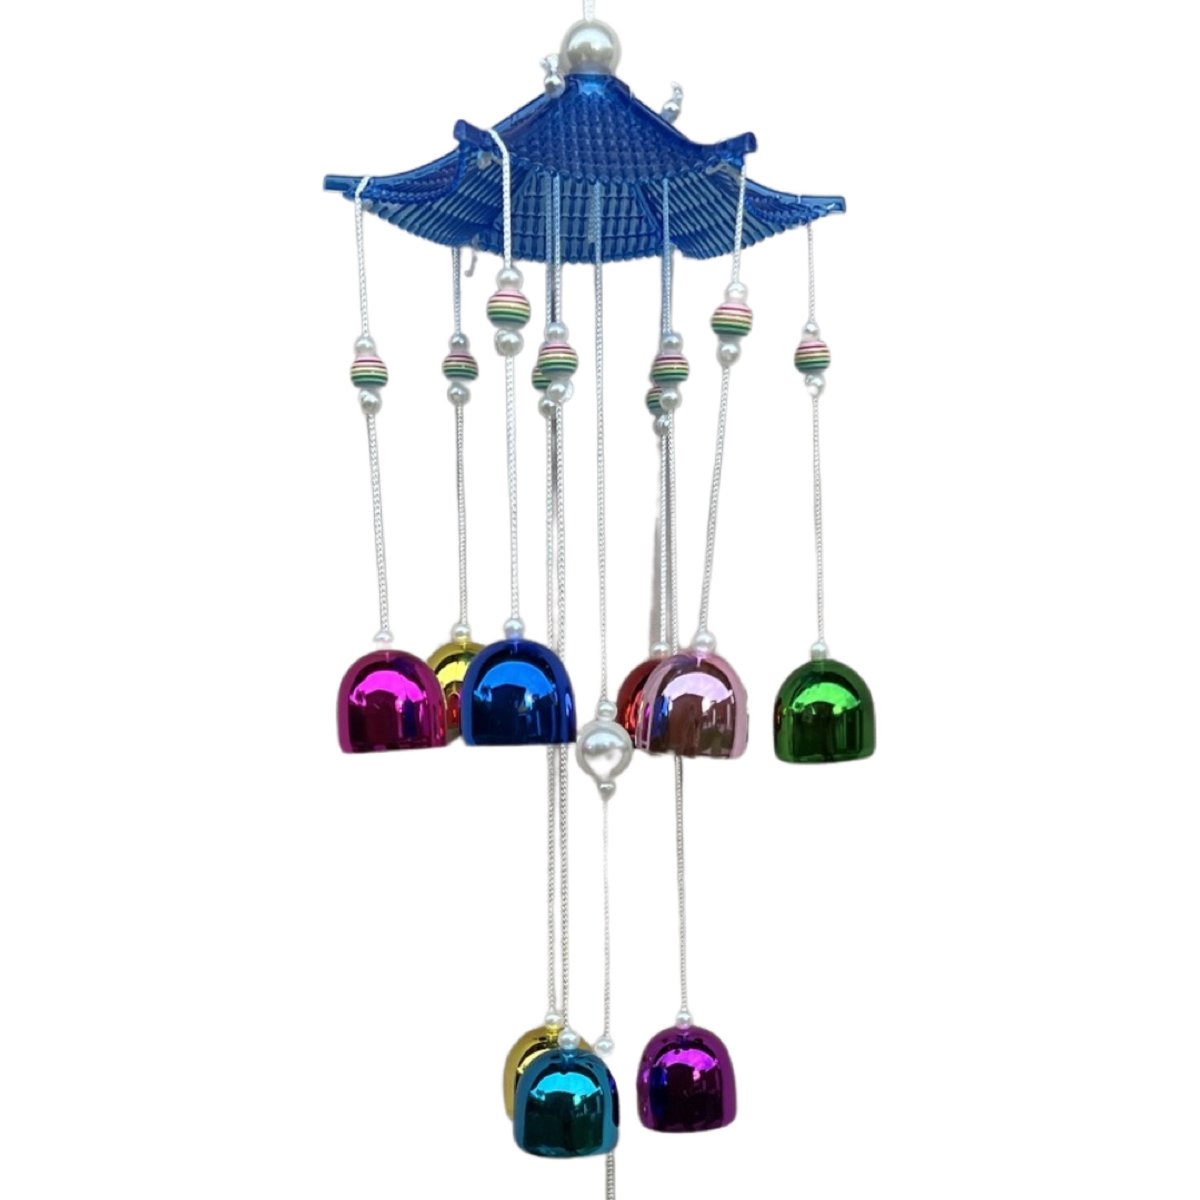 Clopotei de vant colorati din metal cu 9 ramuri si pagoda 60cm impotriva energiilor negative